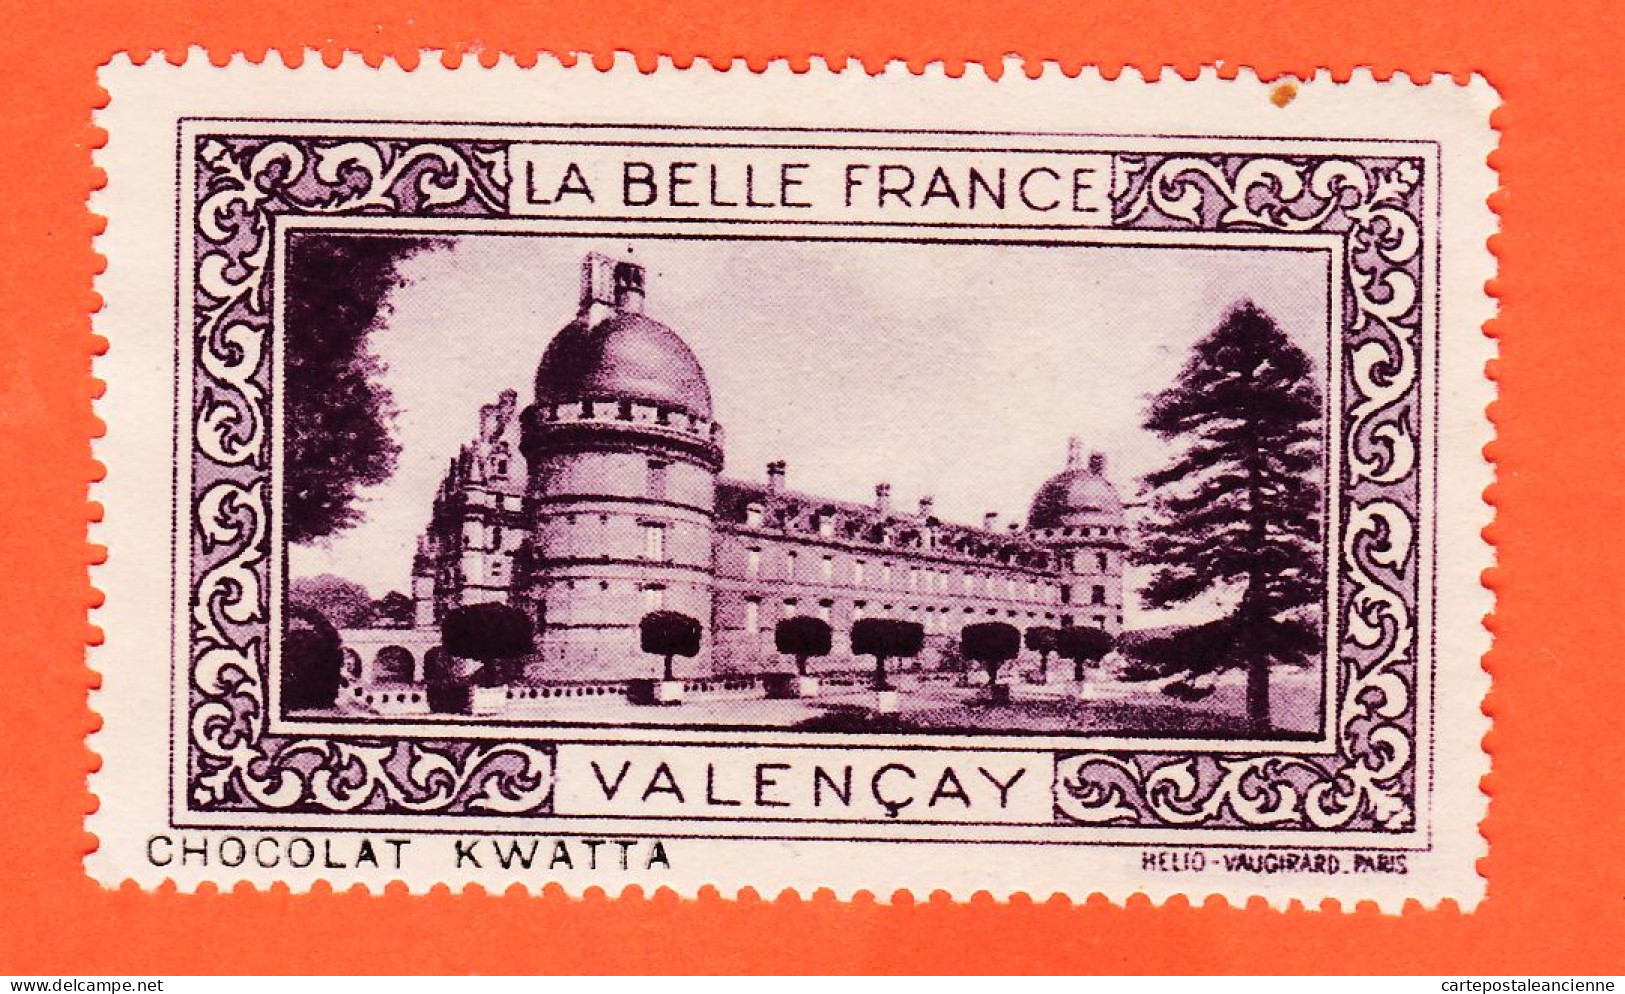 13024 / ⭐ ◉ VALENCAY 36-Indre Chateau Pub Chocolat KWATTA Vignette Collection LA BELLE FRANCE HELIO-VAUGIRARD - Tourisme (Vignettes)